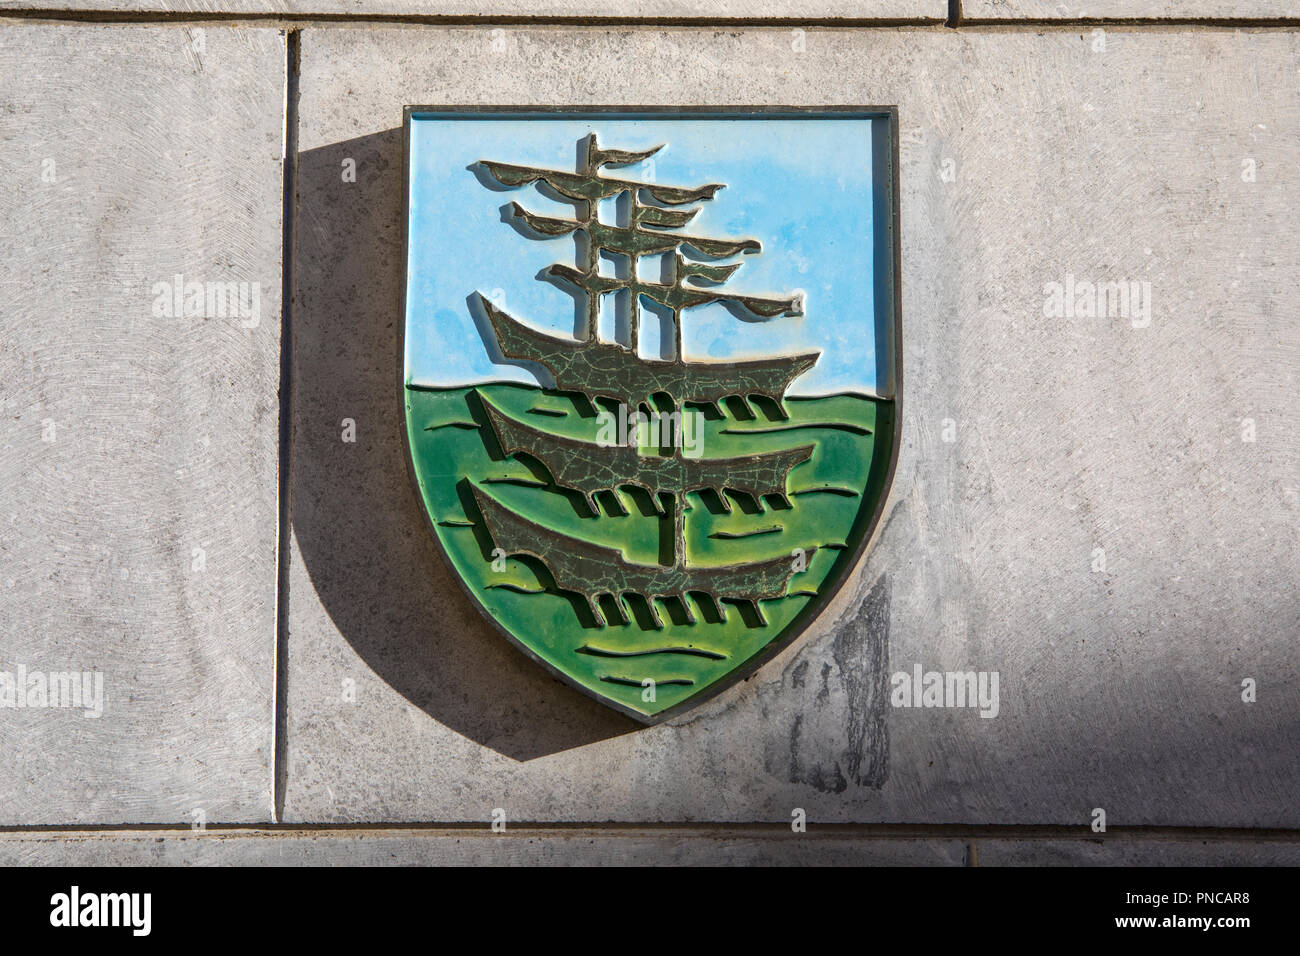 Waterford, Repubblica di Irlanda - 16 agosto 2018: Lo stemma storico della città di Waterford Repubblica di Irlanda. Le navi illustrat Foto Stock